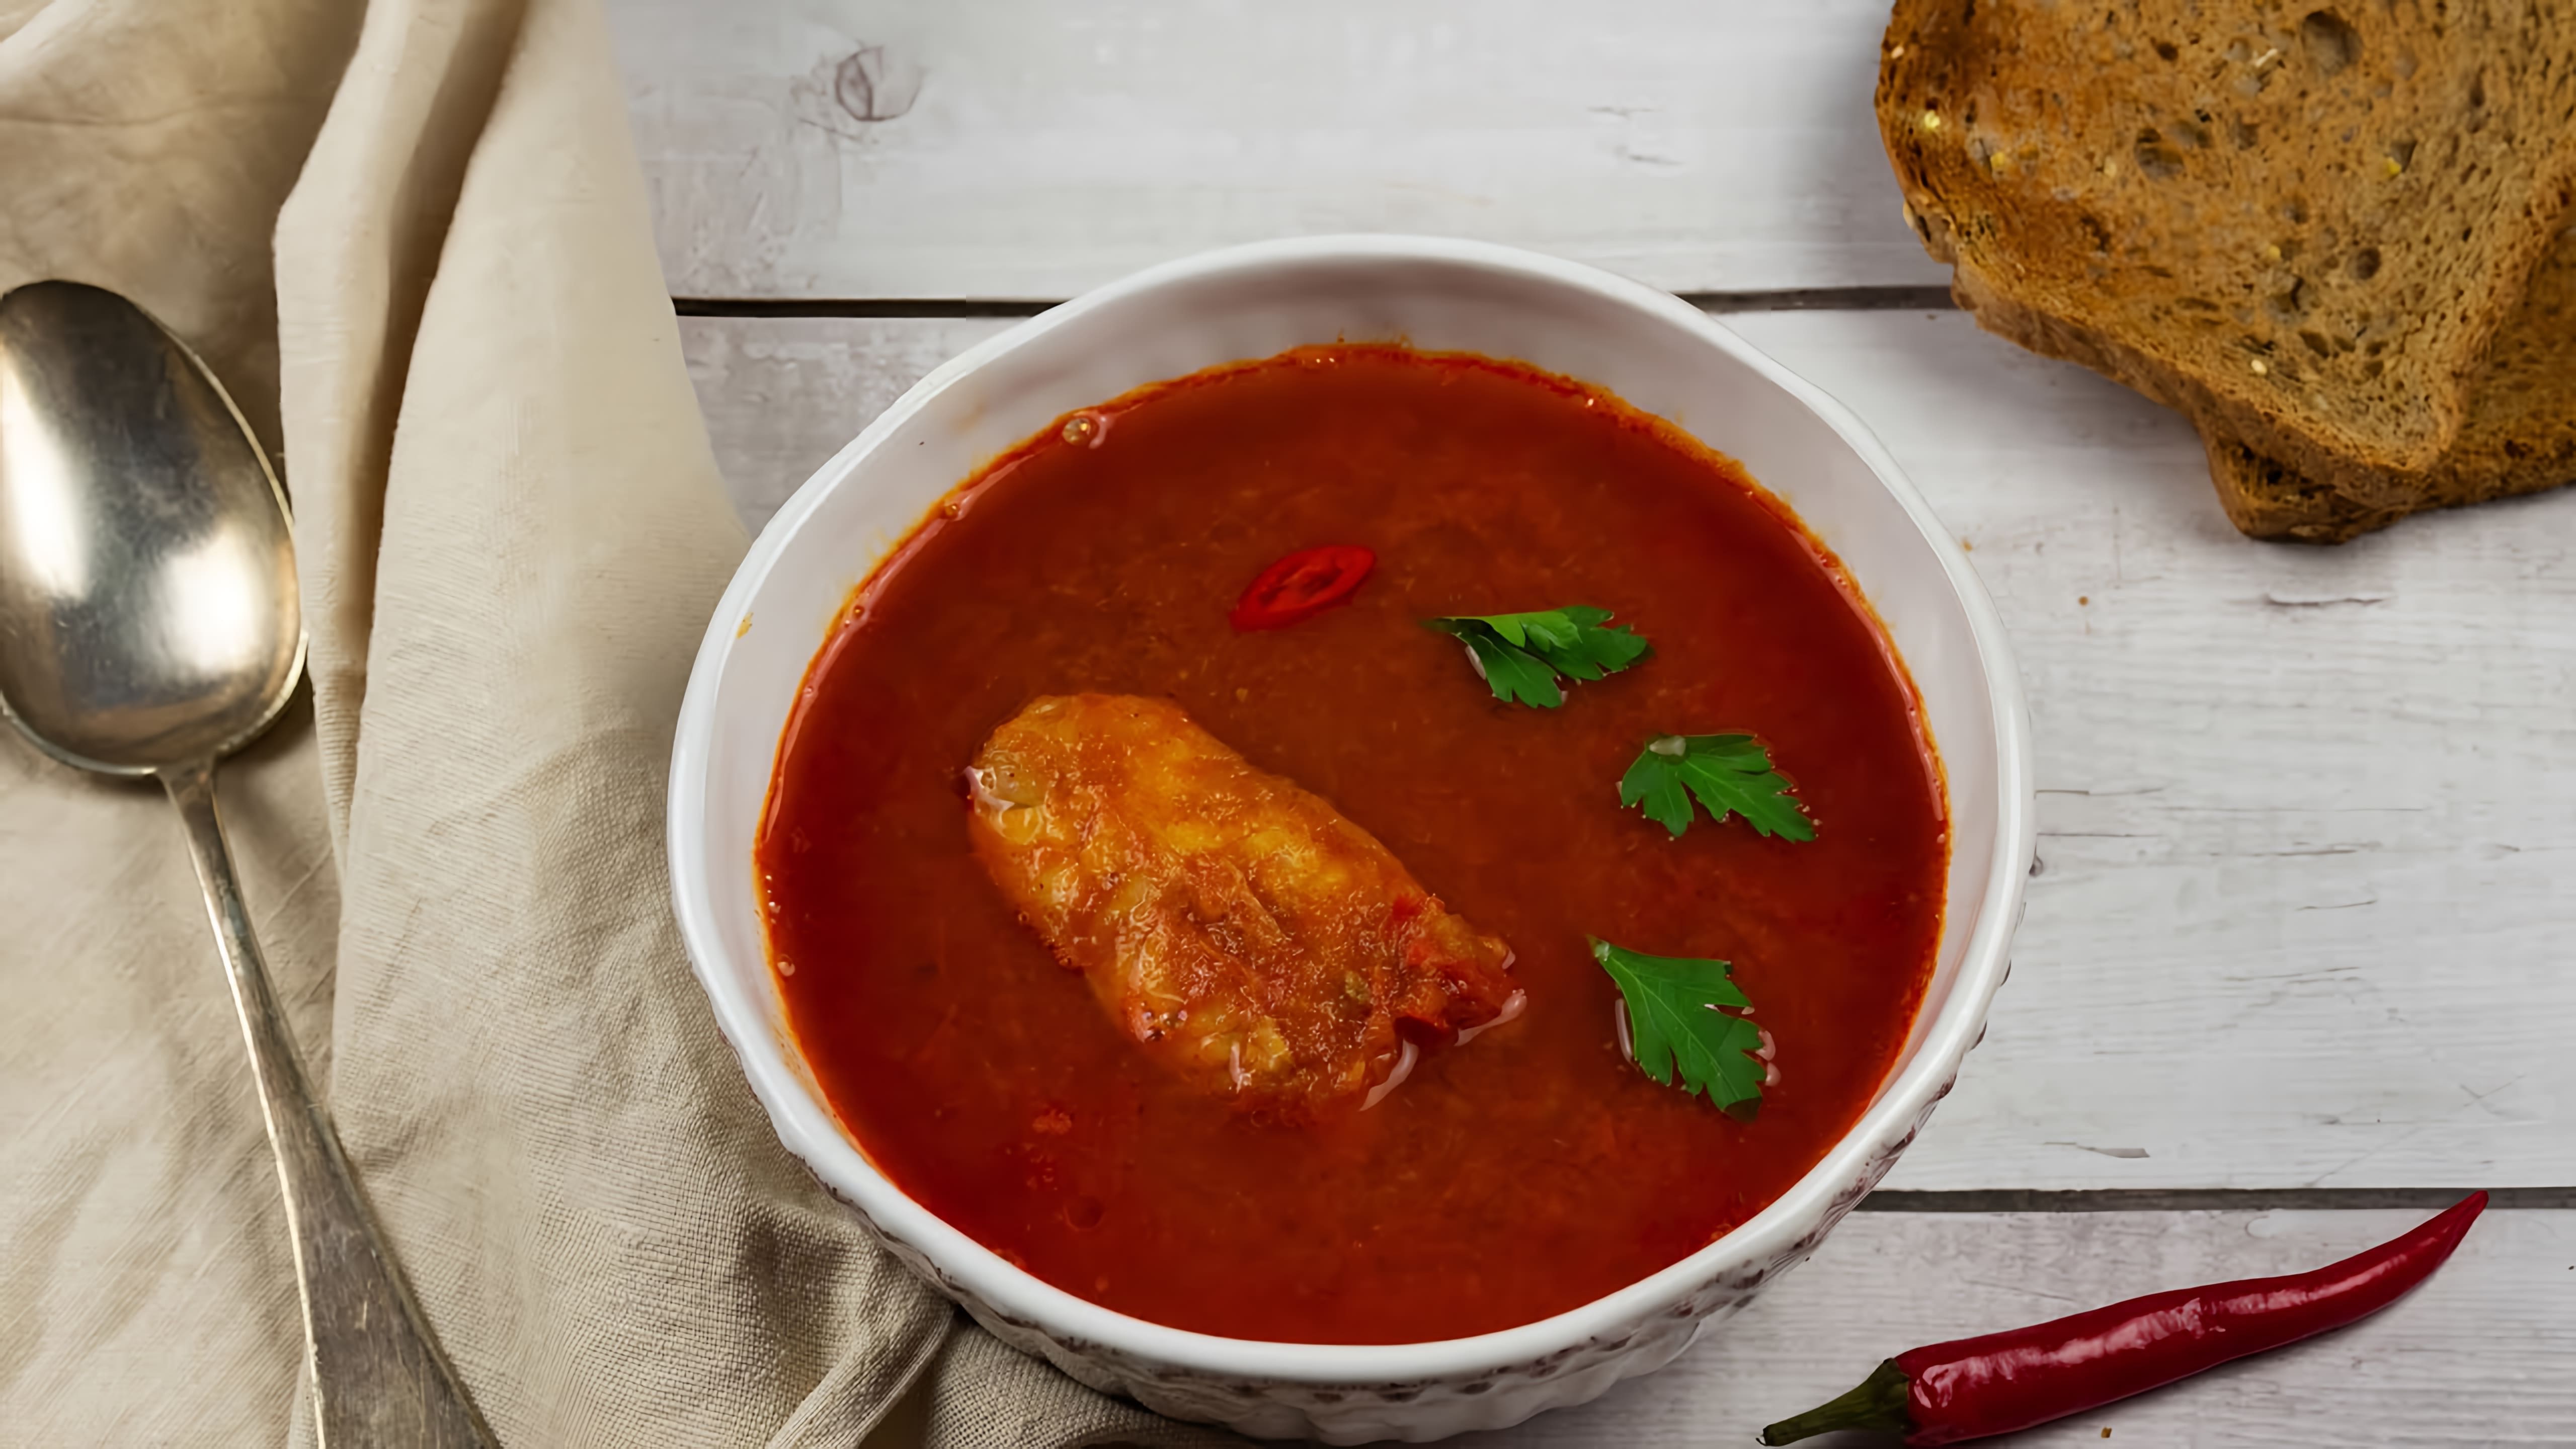 Венгерский рыбный суп Халасле - это традиционное блюдо венгерской кухни, которое готовится из свежей рыбы, овощей и специй